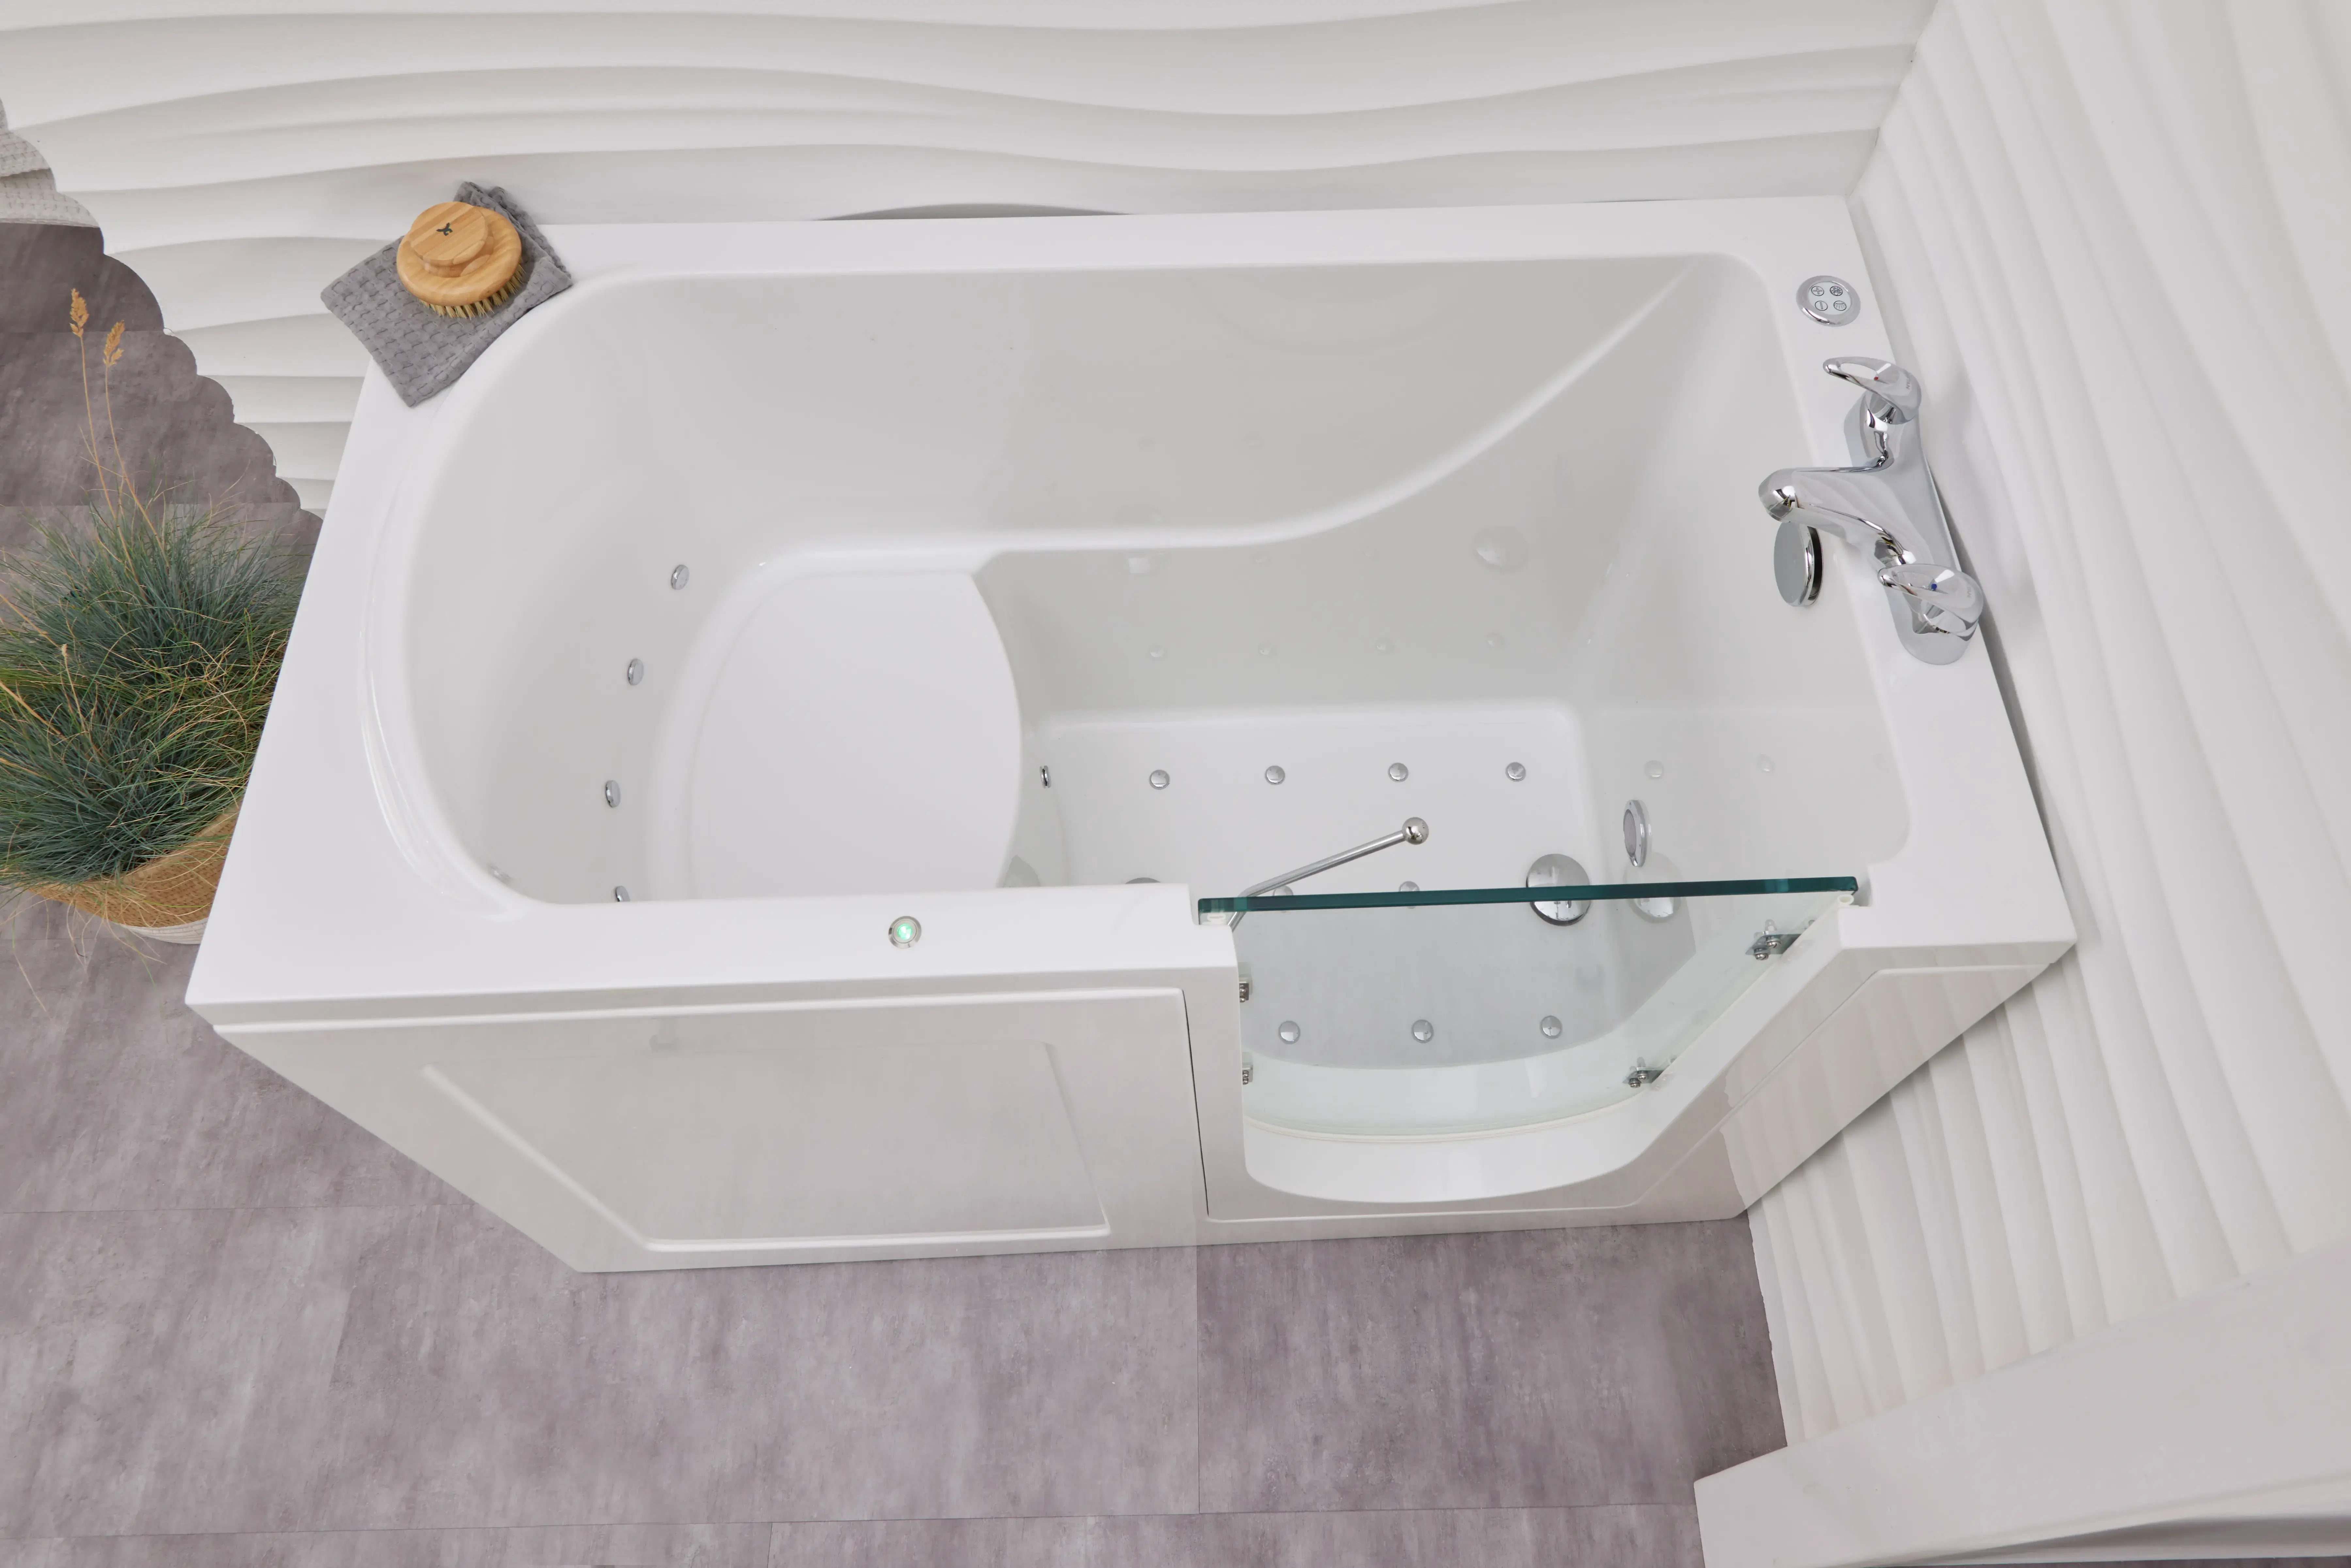 A white bath tub sitting inside of a bathroom.